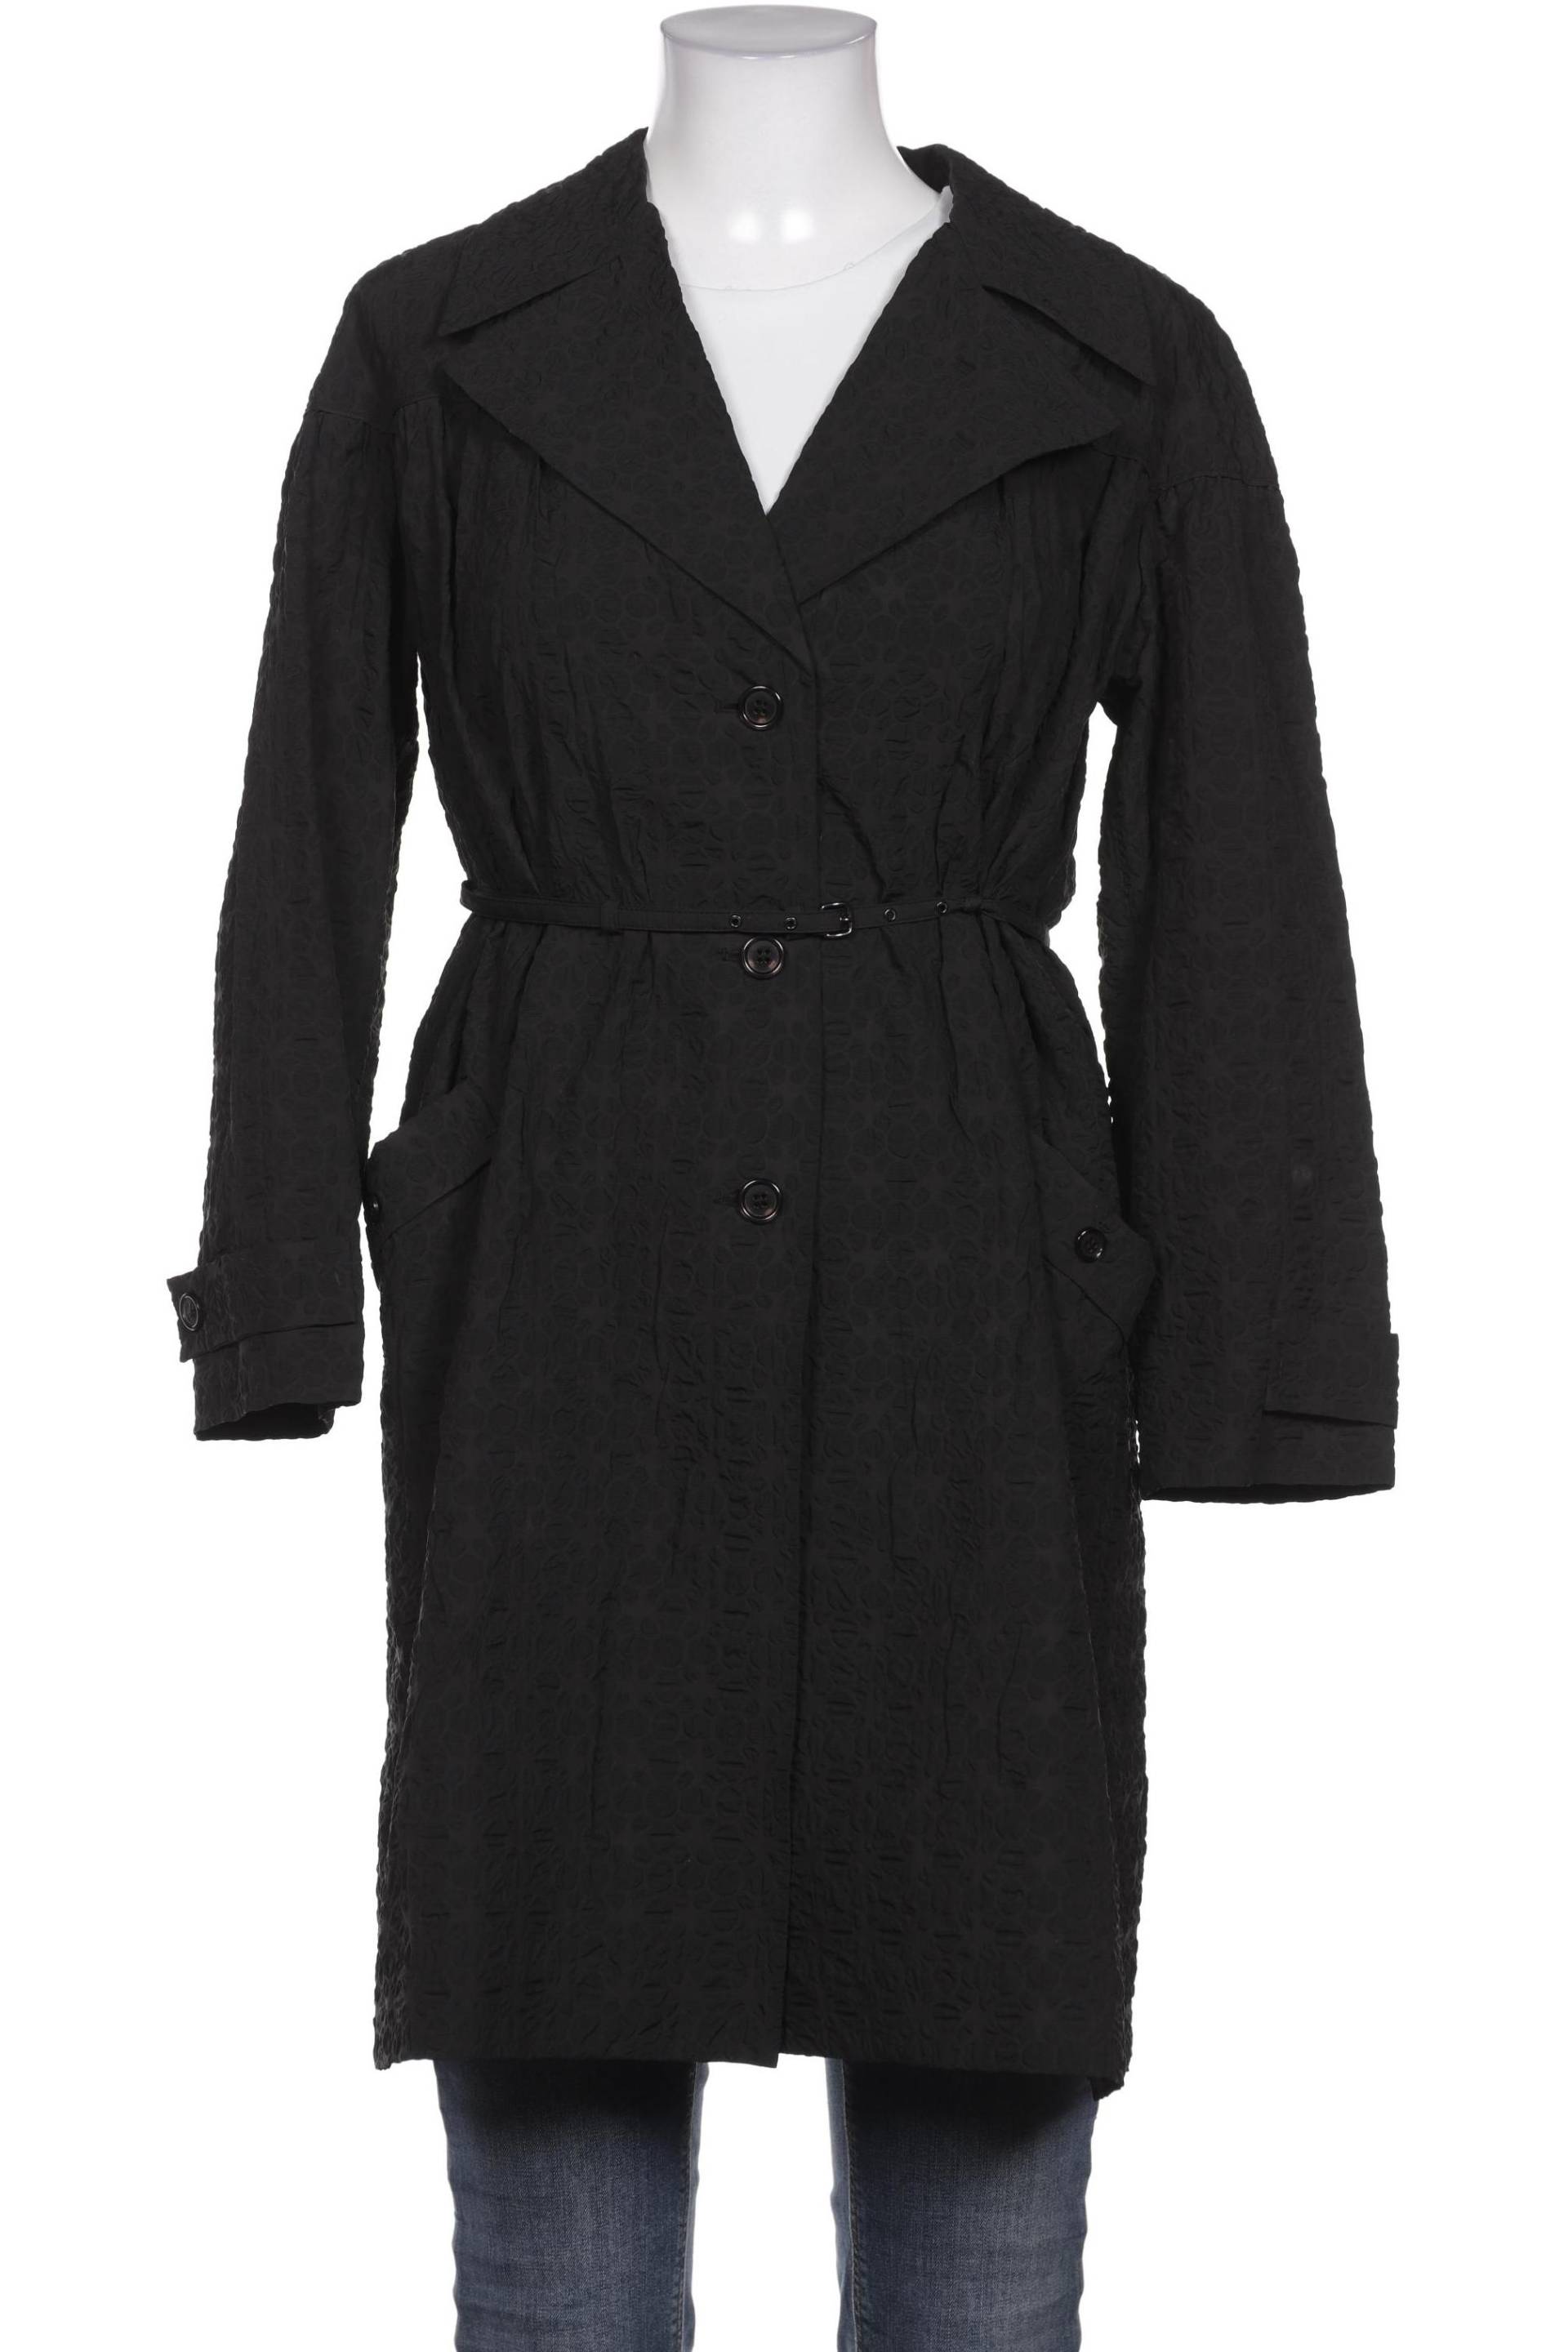 Miu Miu Damen Mantel, schwarz, Gr. 42 von Miu Miu